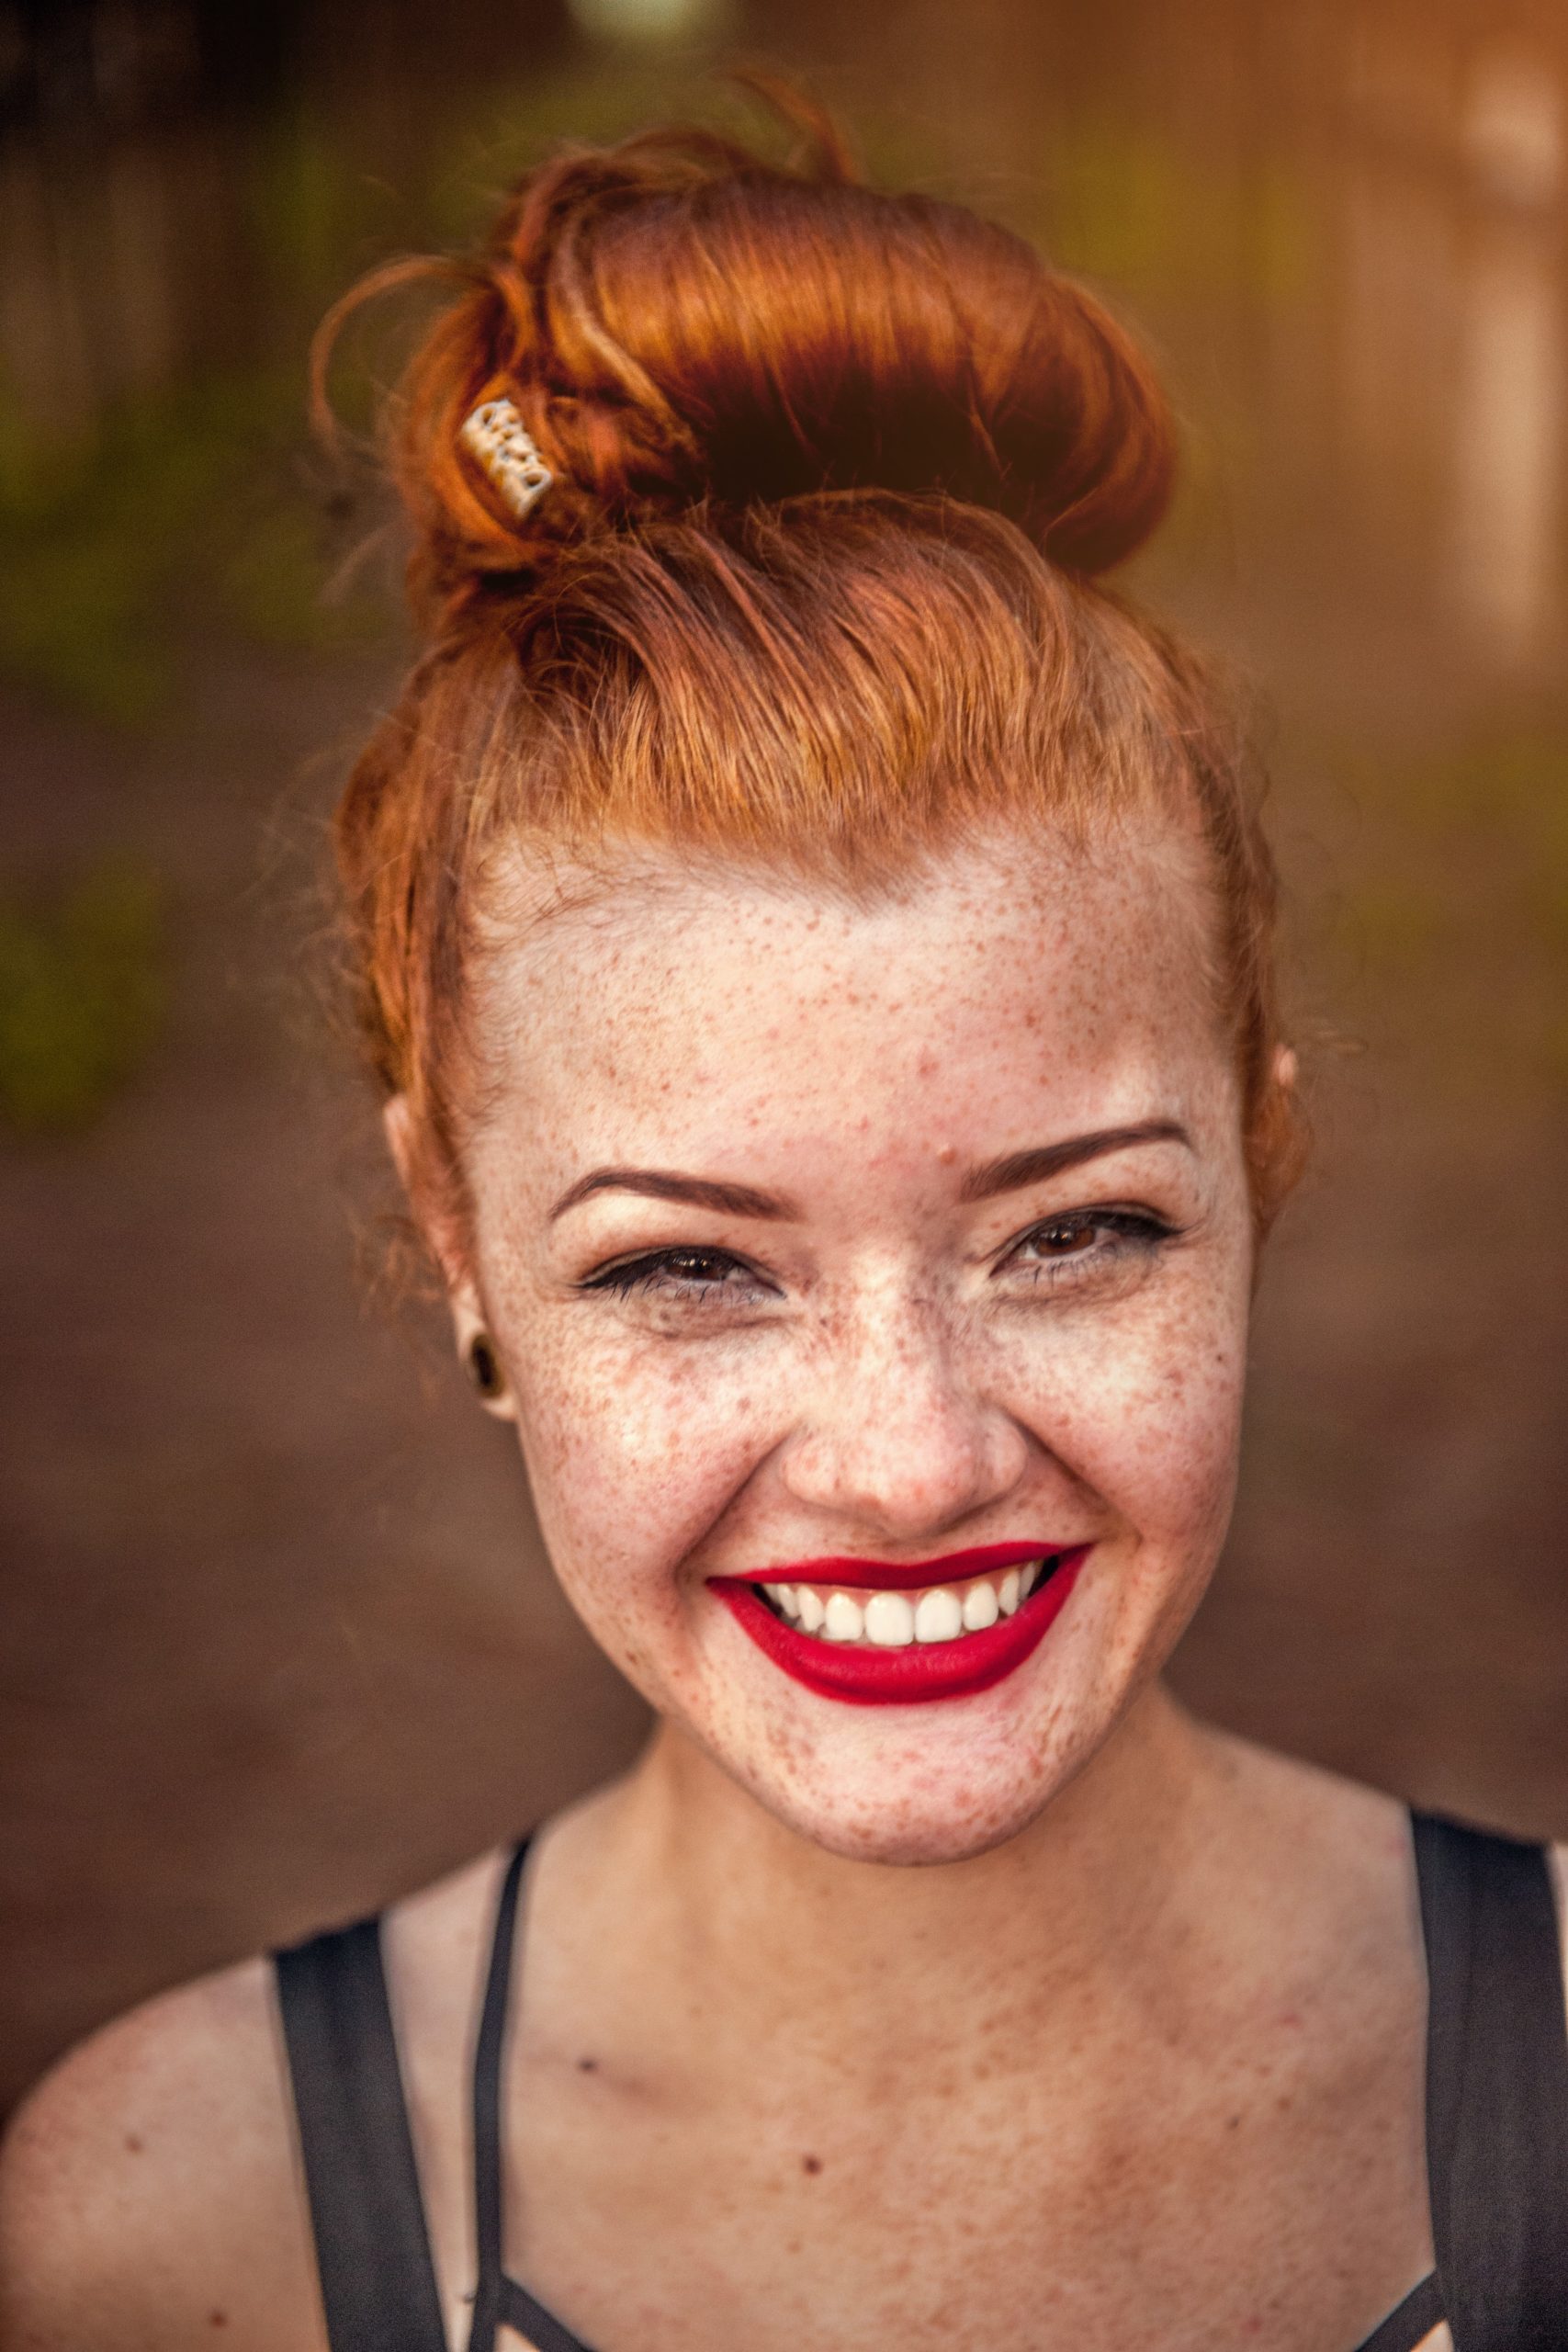 Junge Frau mit roten Haaren lächelt.